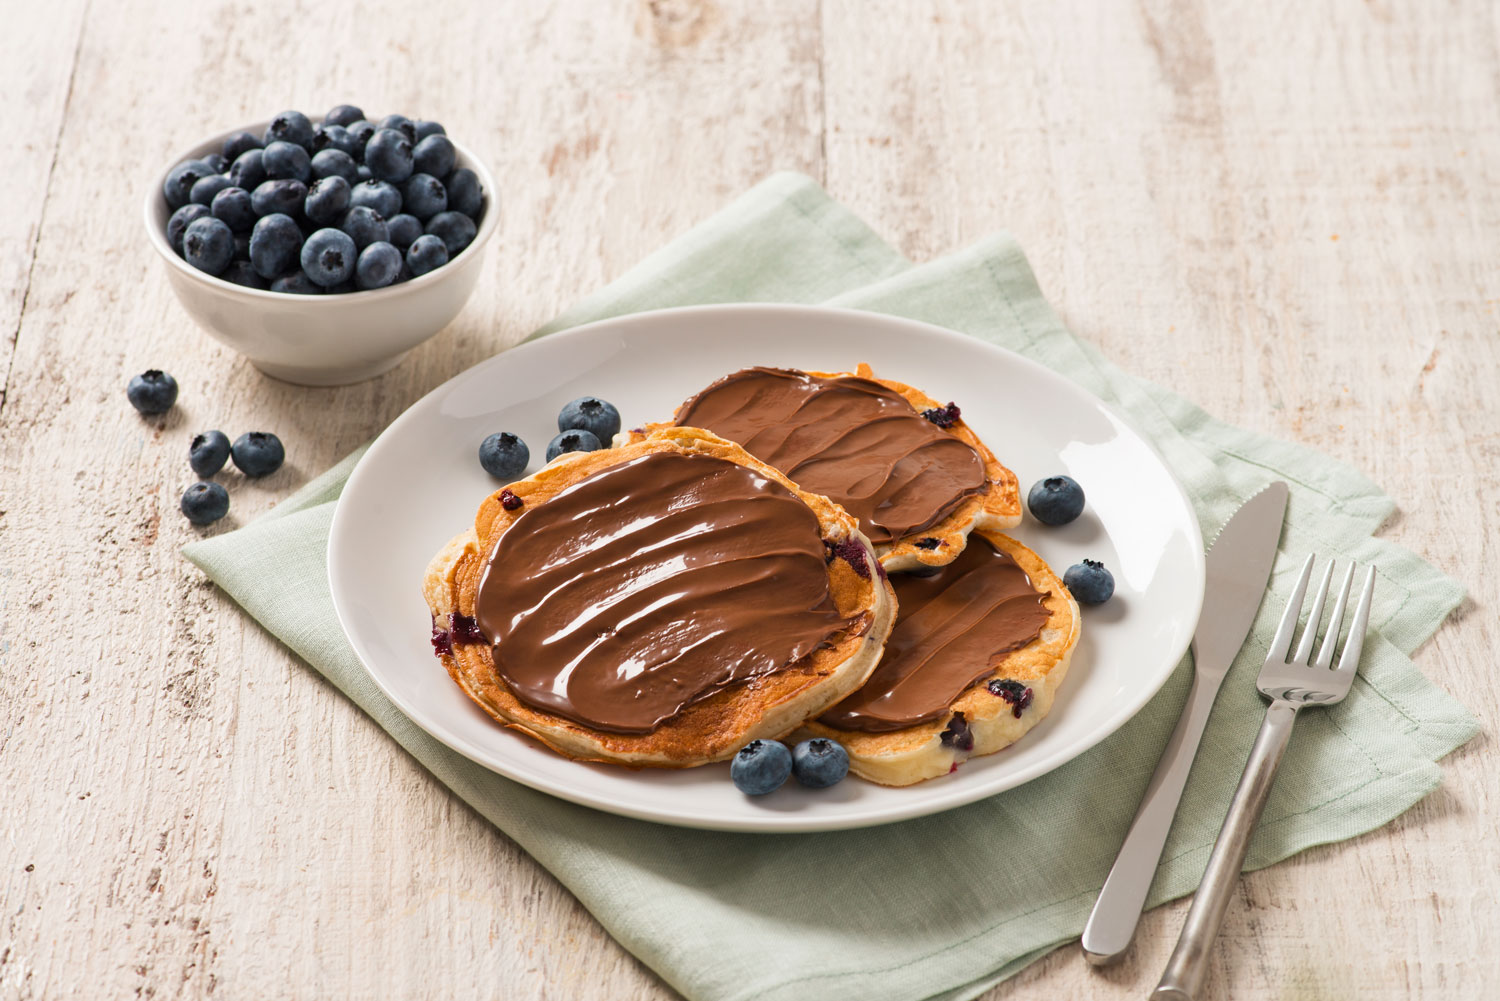 Pancakes de suero de leche con Nutella®, arándanos y fresas